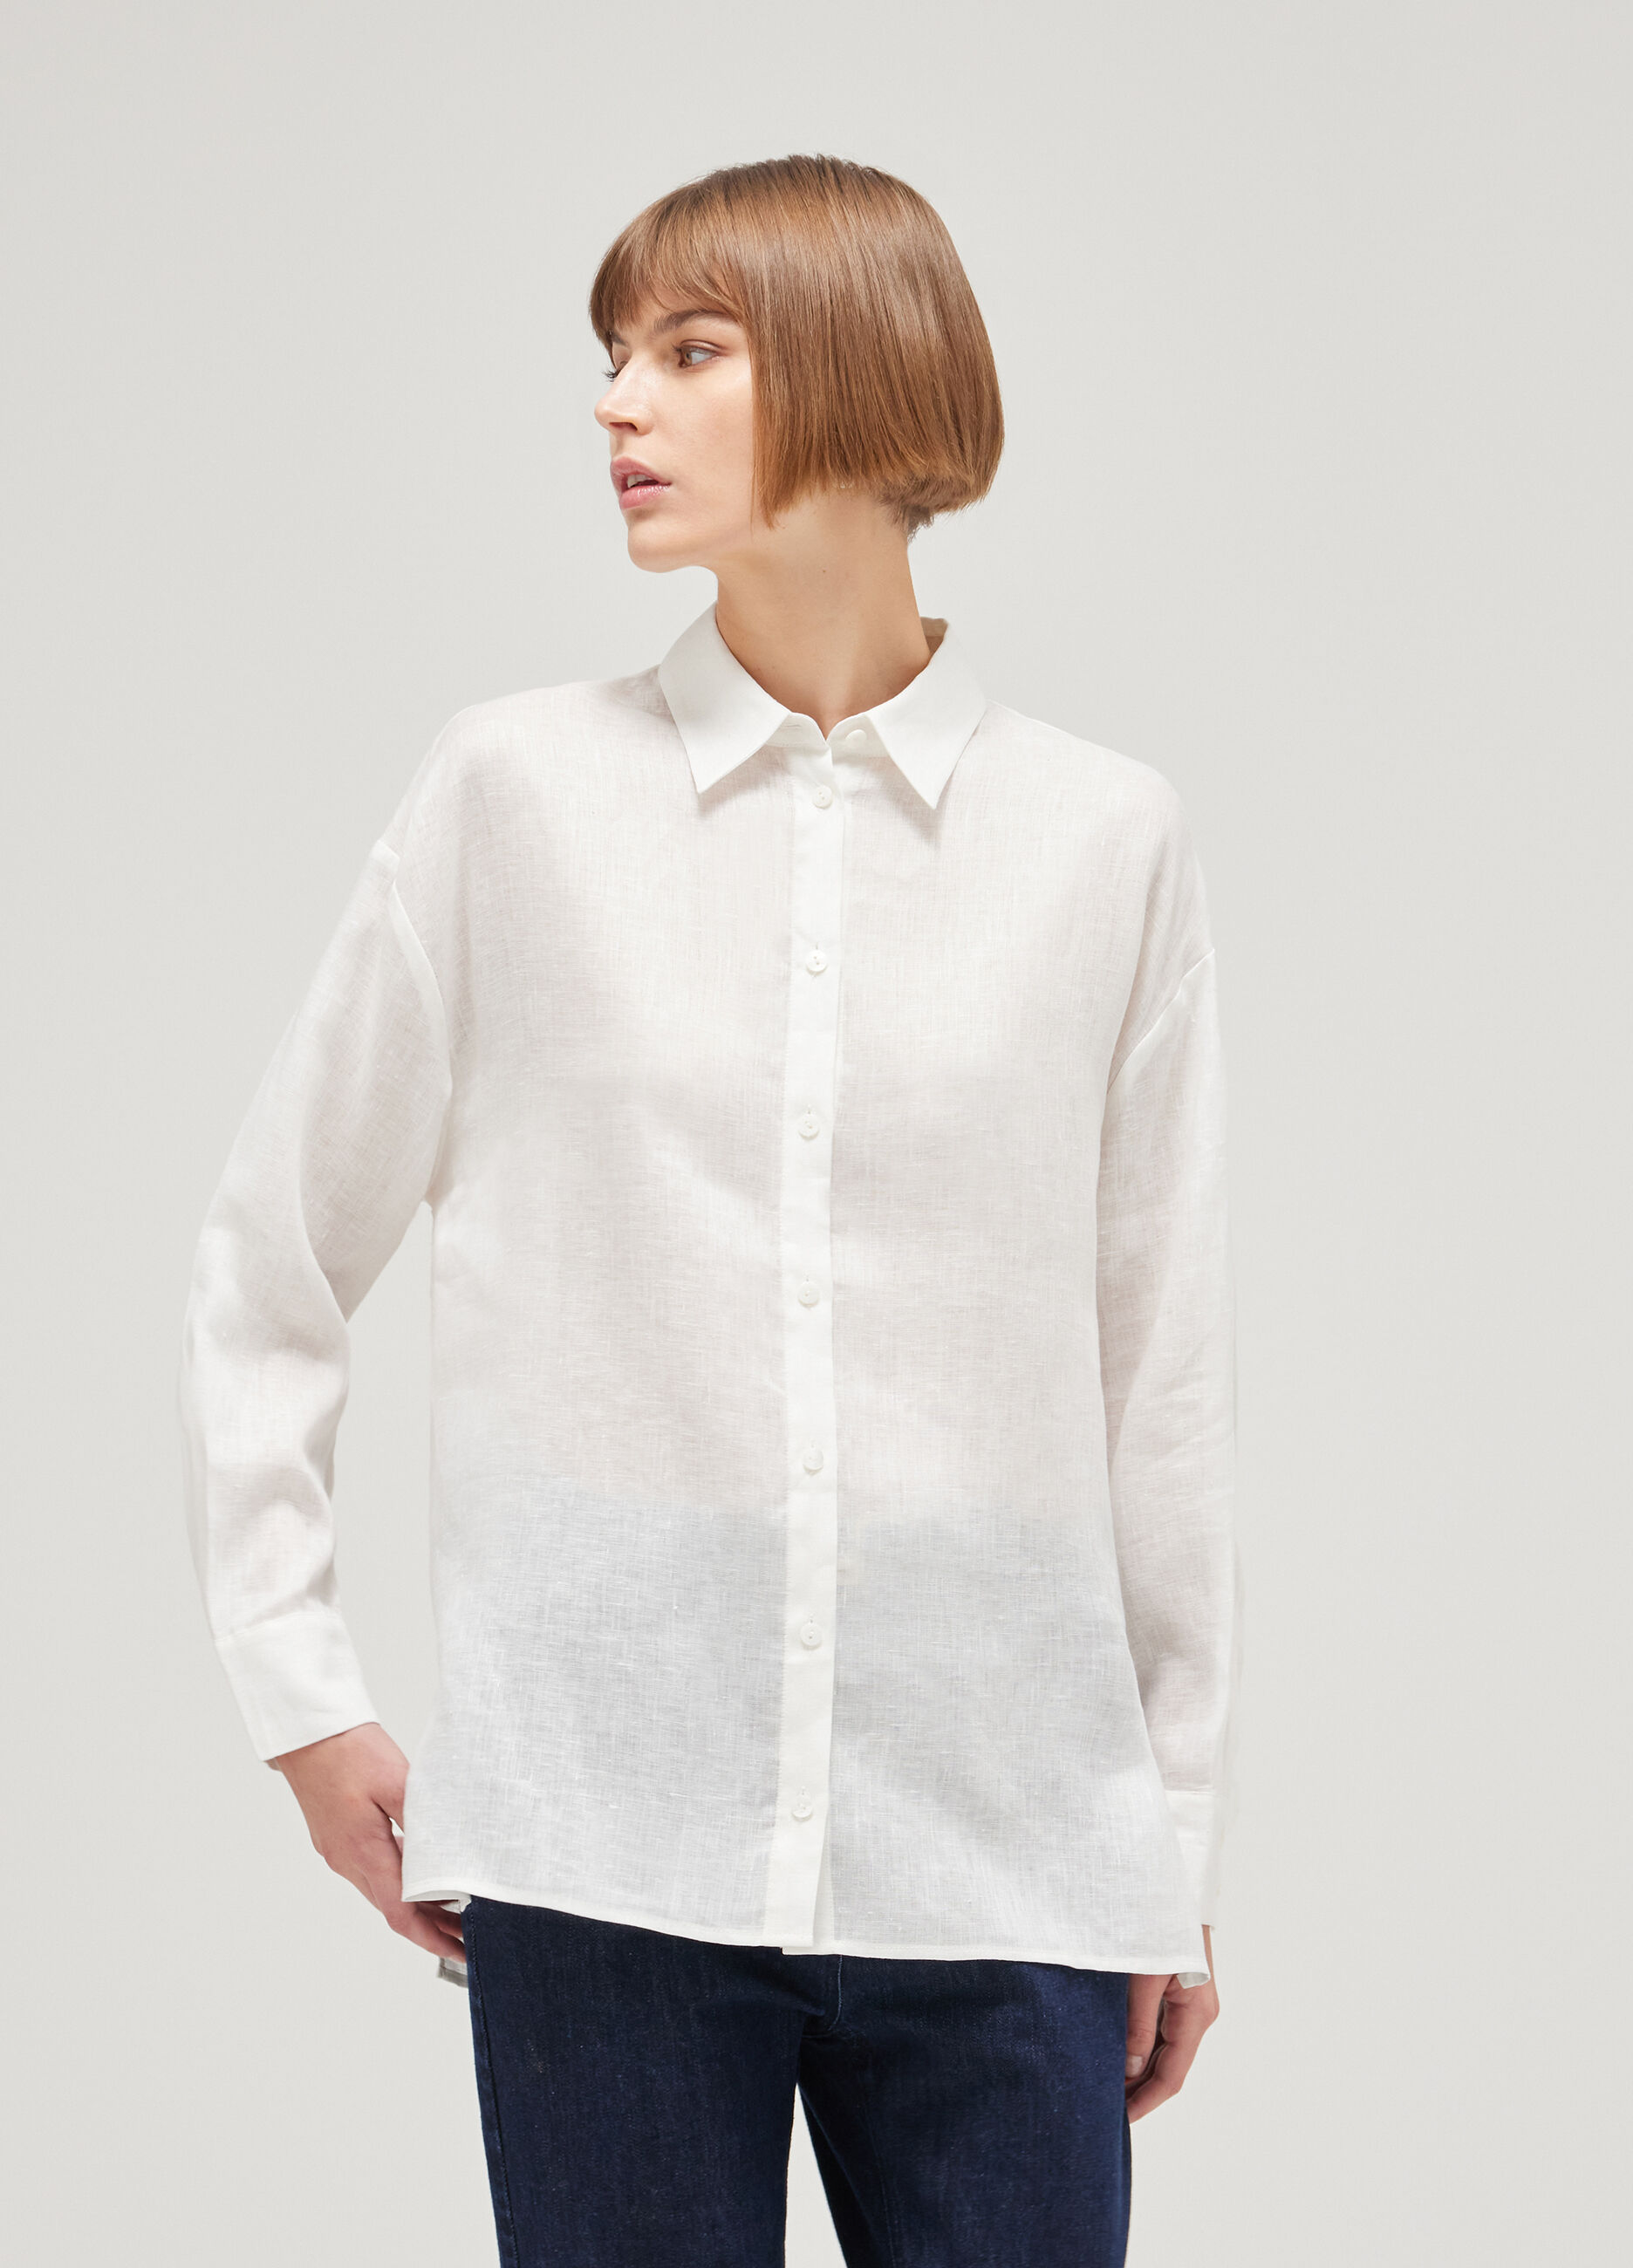 Long-sleeved linen shirt_1